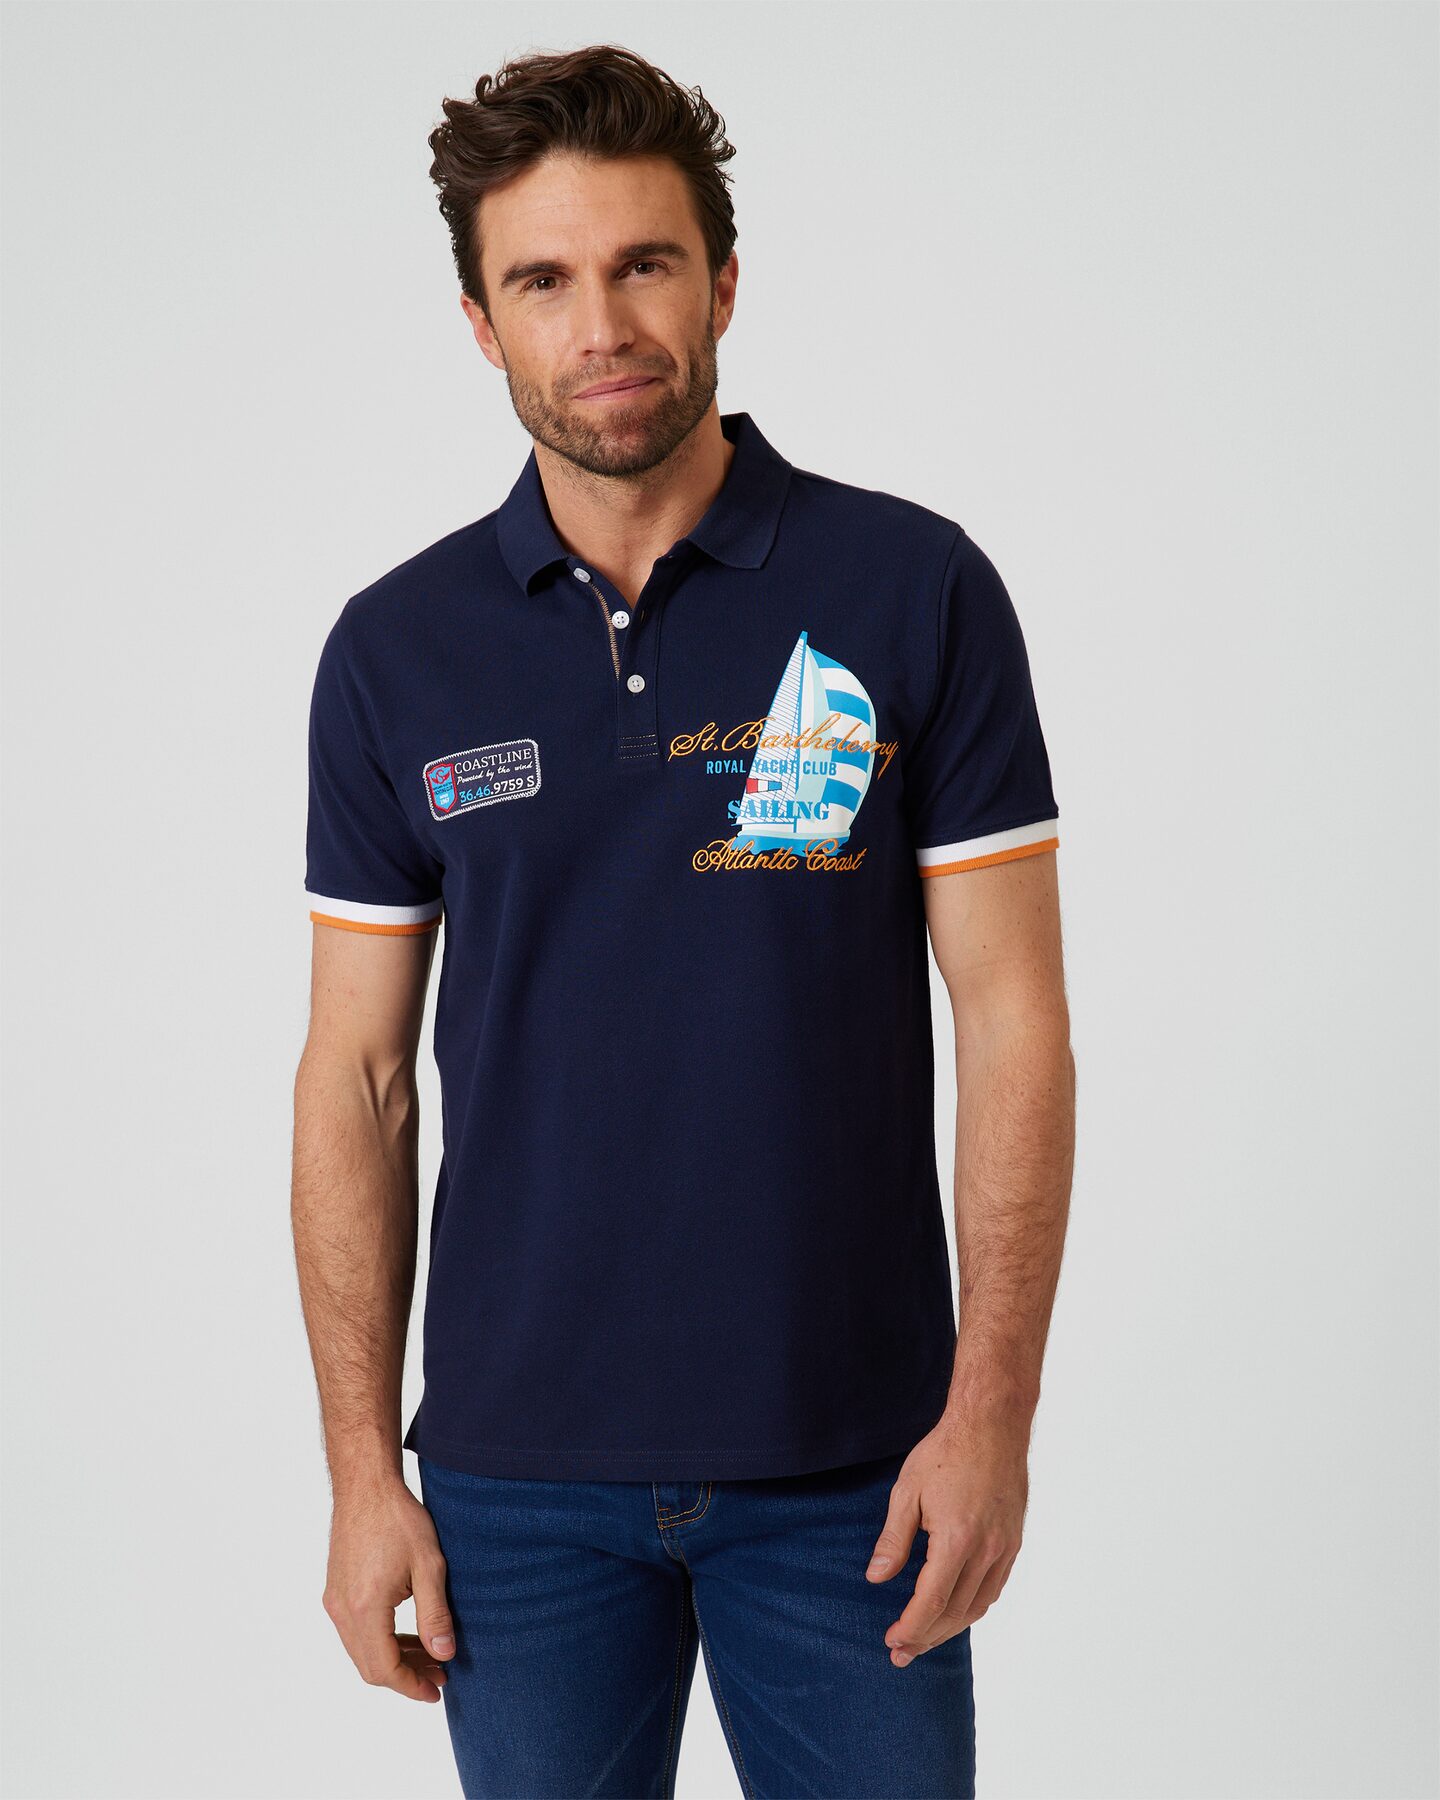 Produktabbildung für Poloshirt "Sailing"